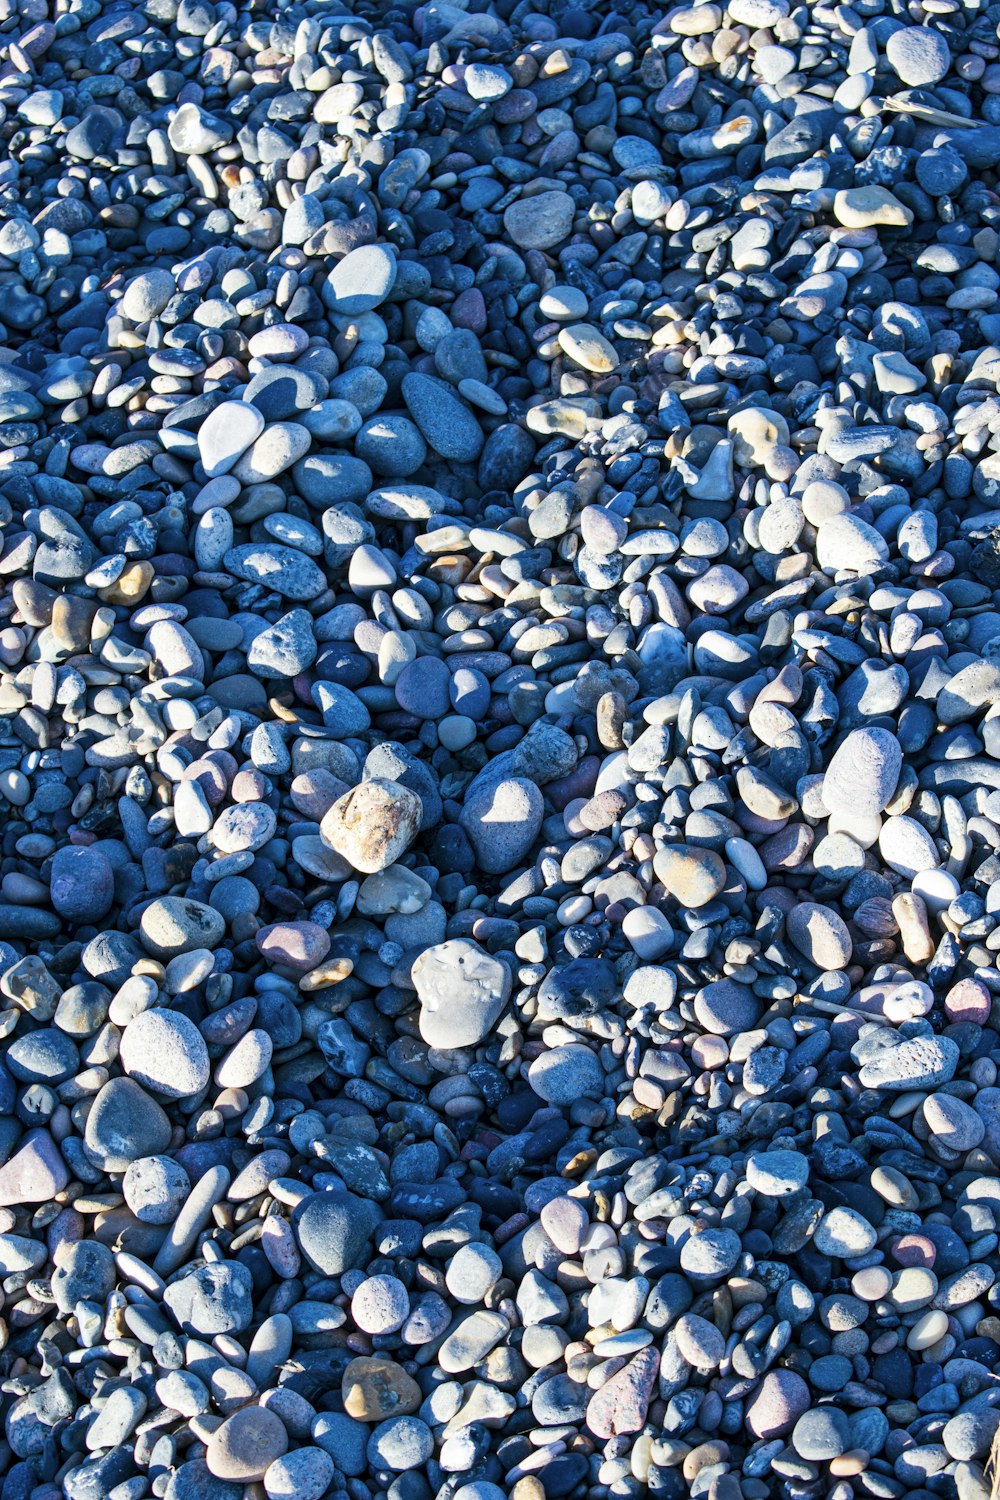 pedras brancas e cinzentas em seixos azuis e brancos